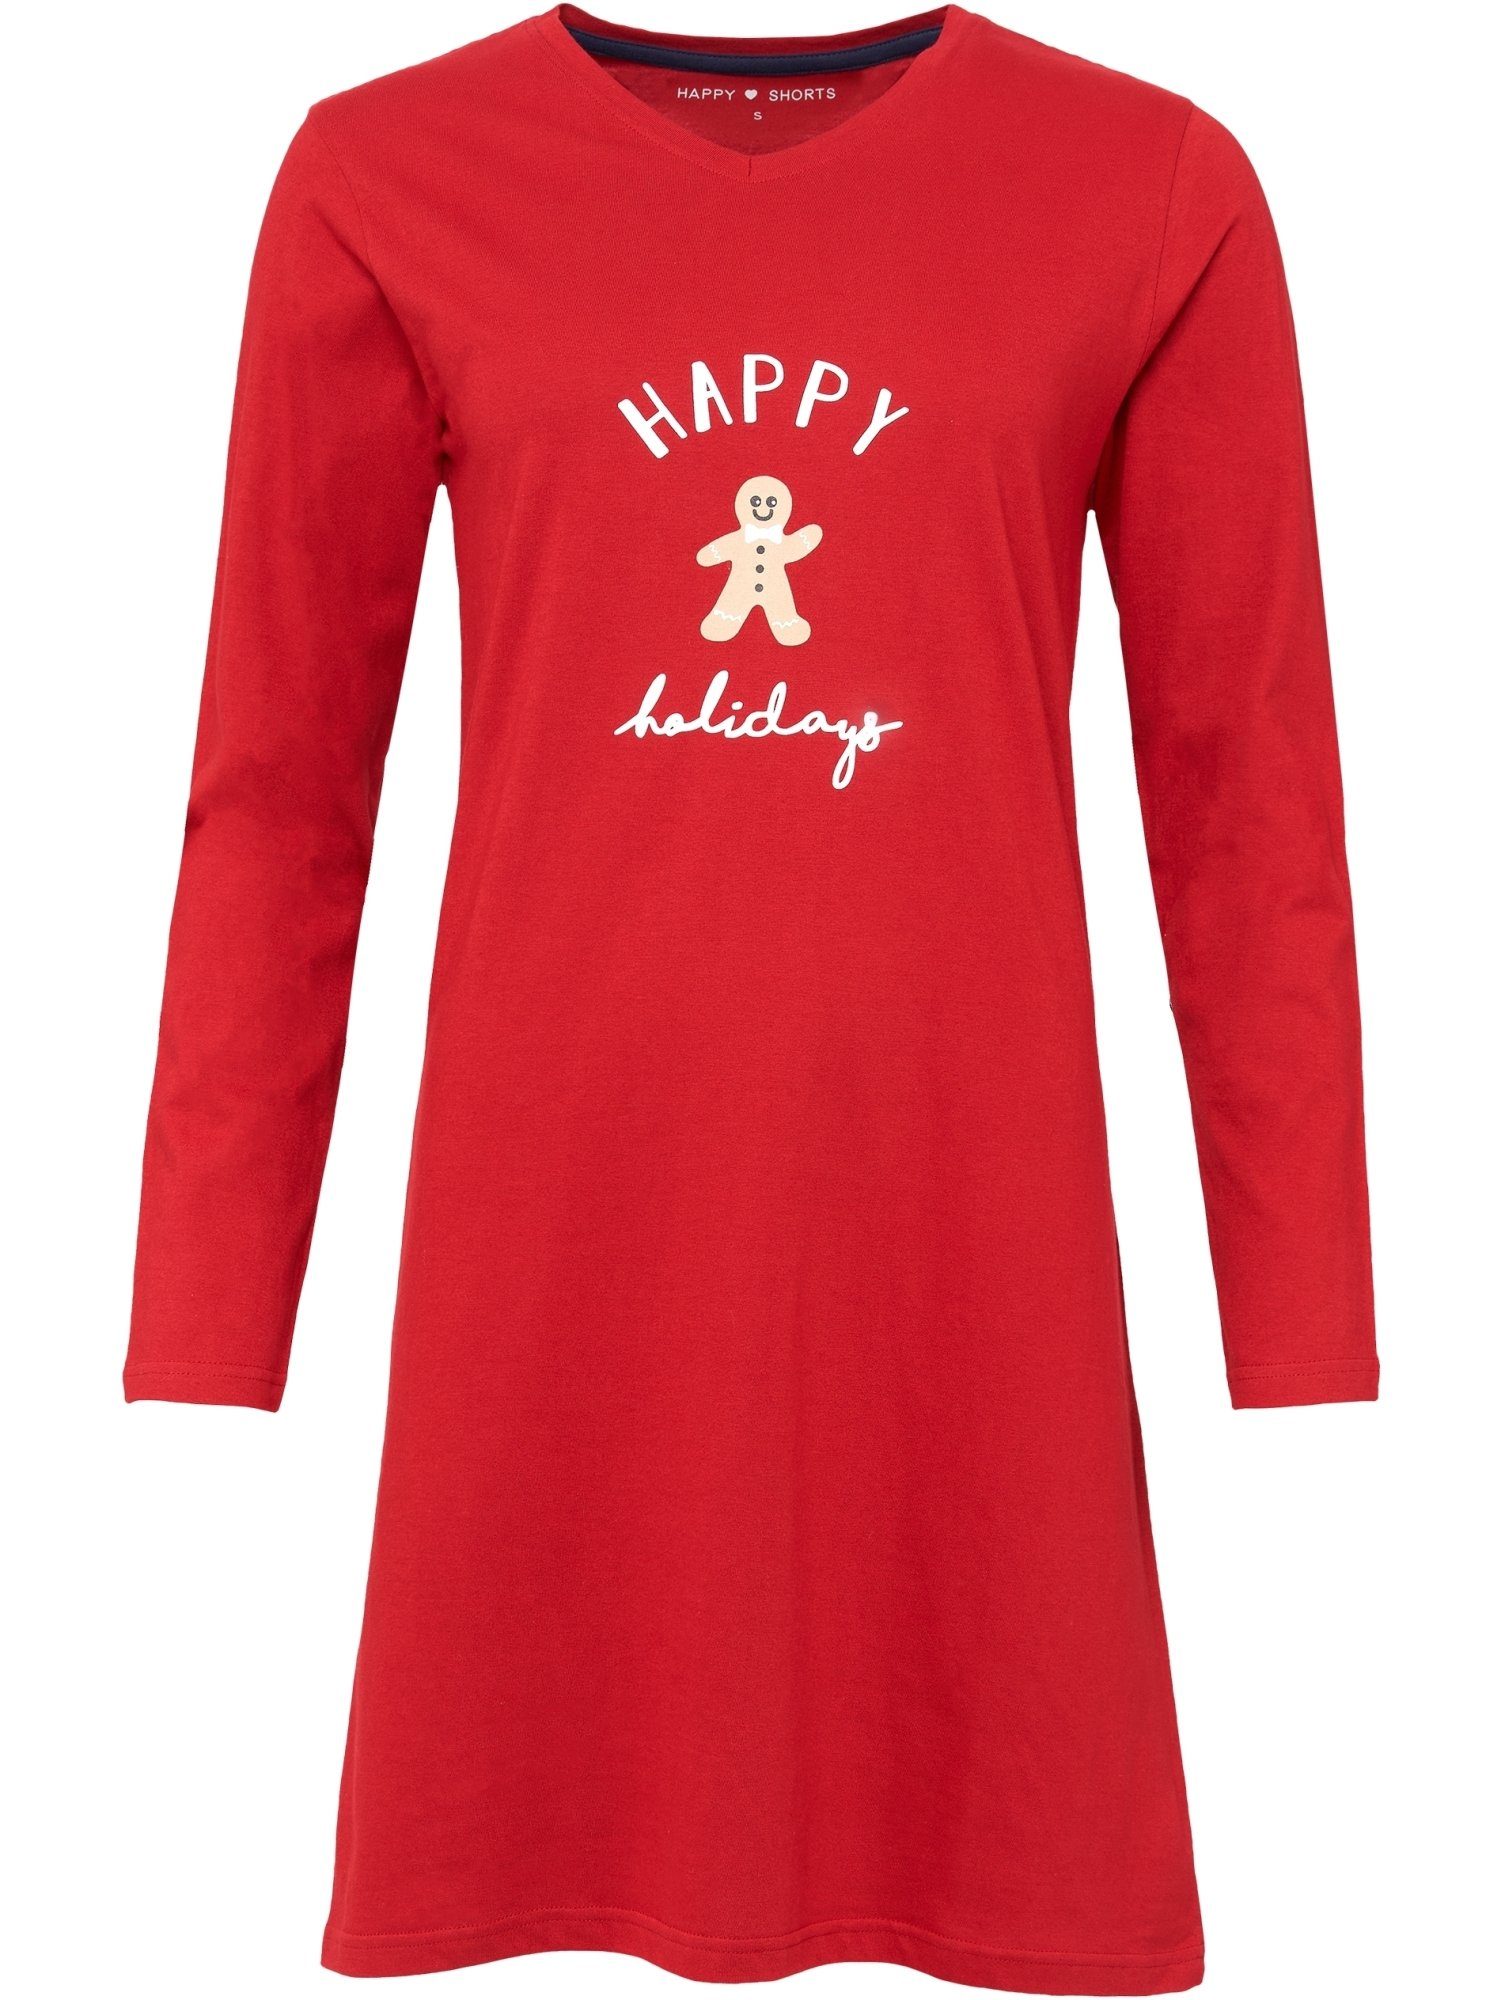 HAPPY SHORTS Nachthemd schlafshirt red Pyjama Xmas schlafmode